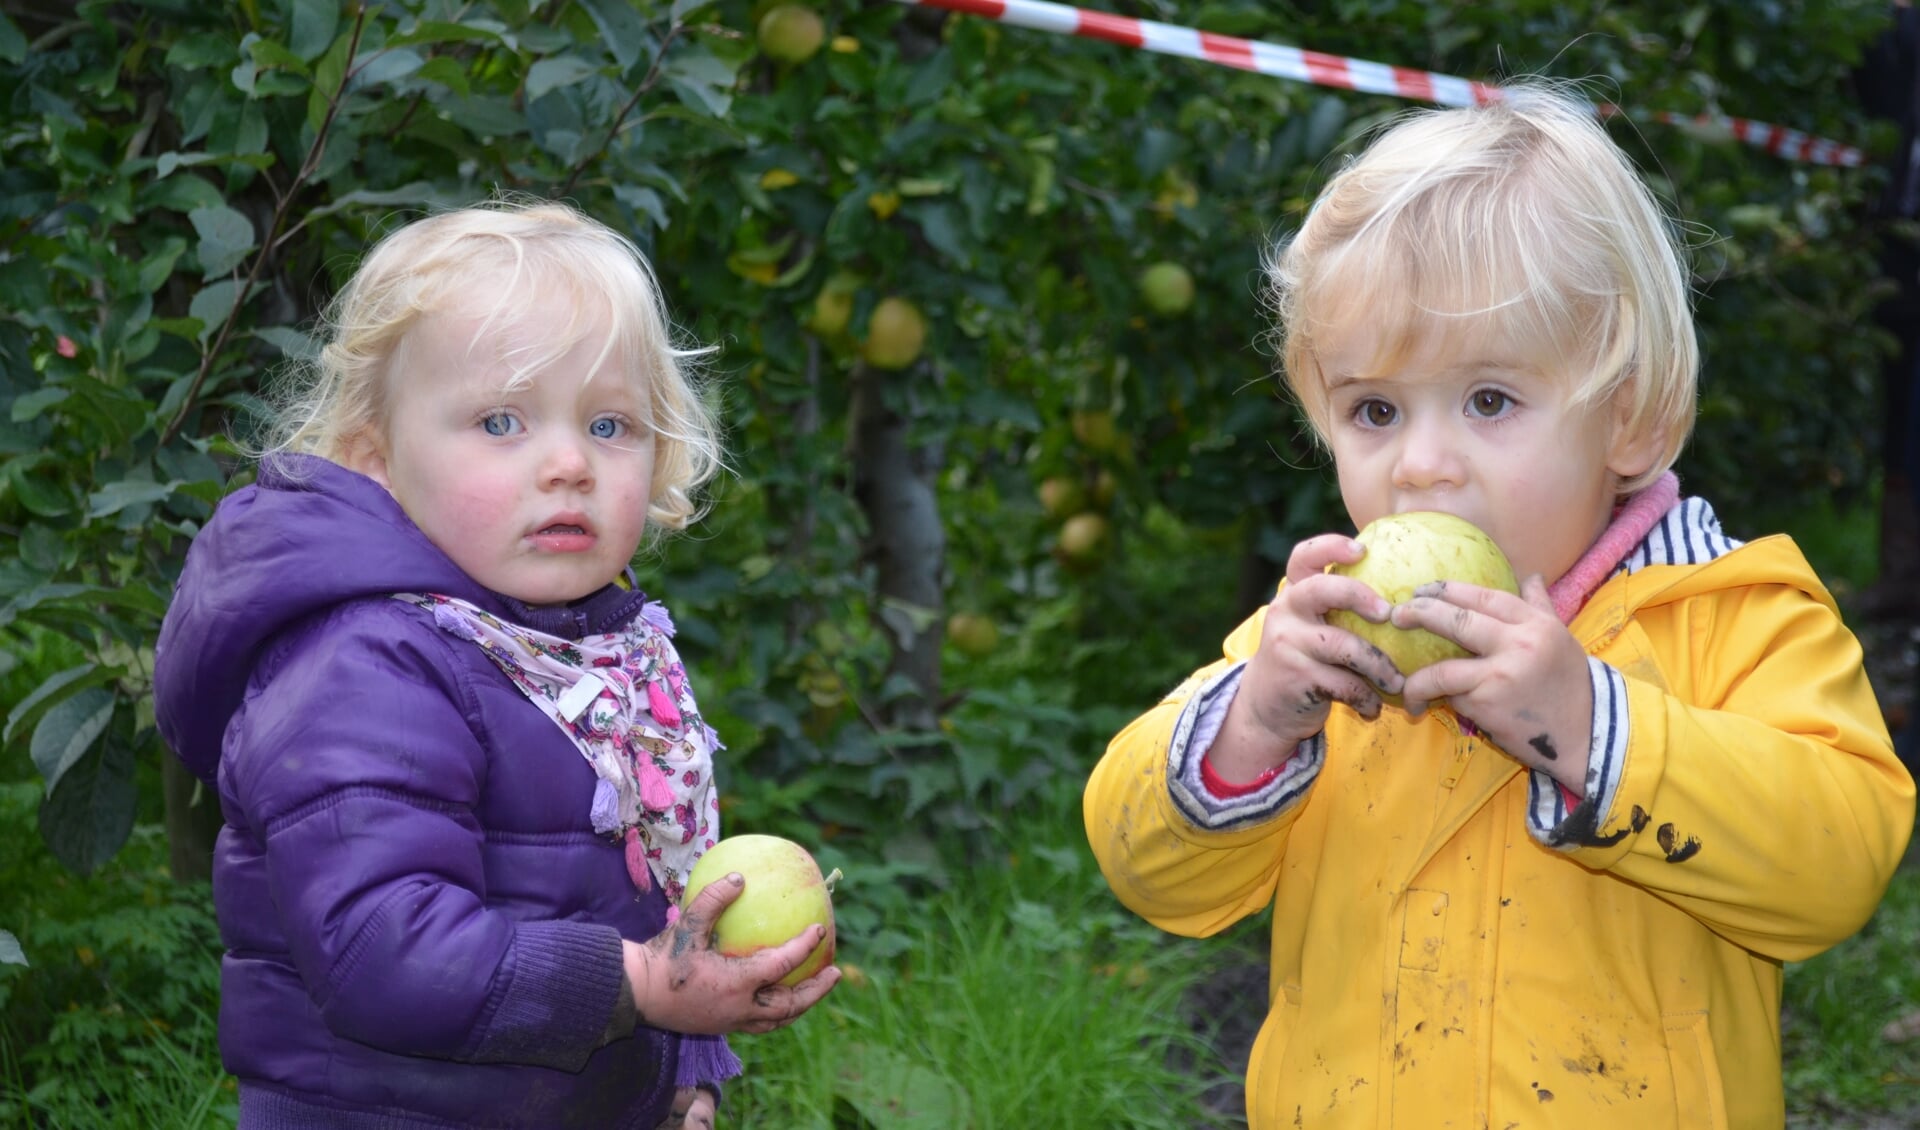 Appels plukken op de Olmenhorst